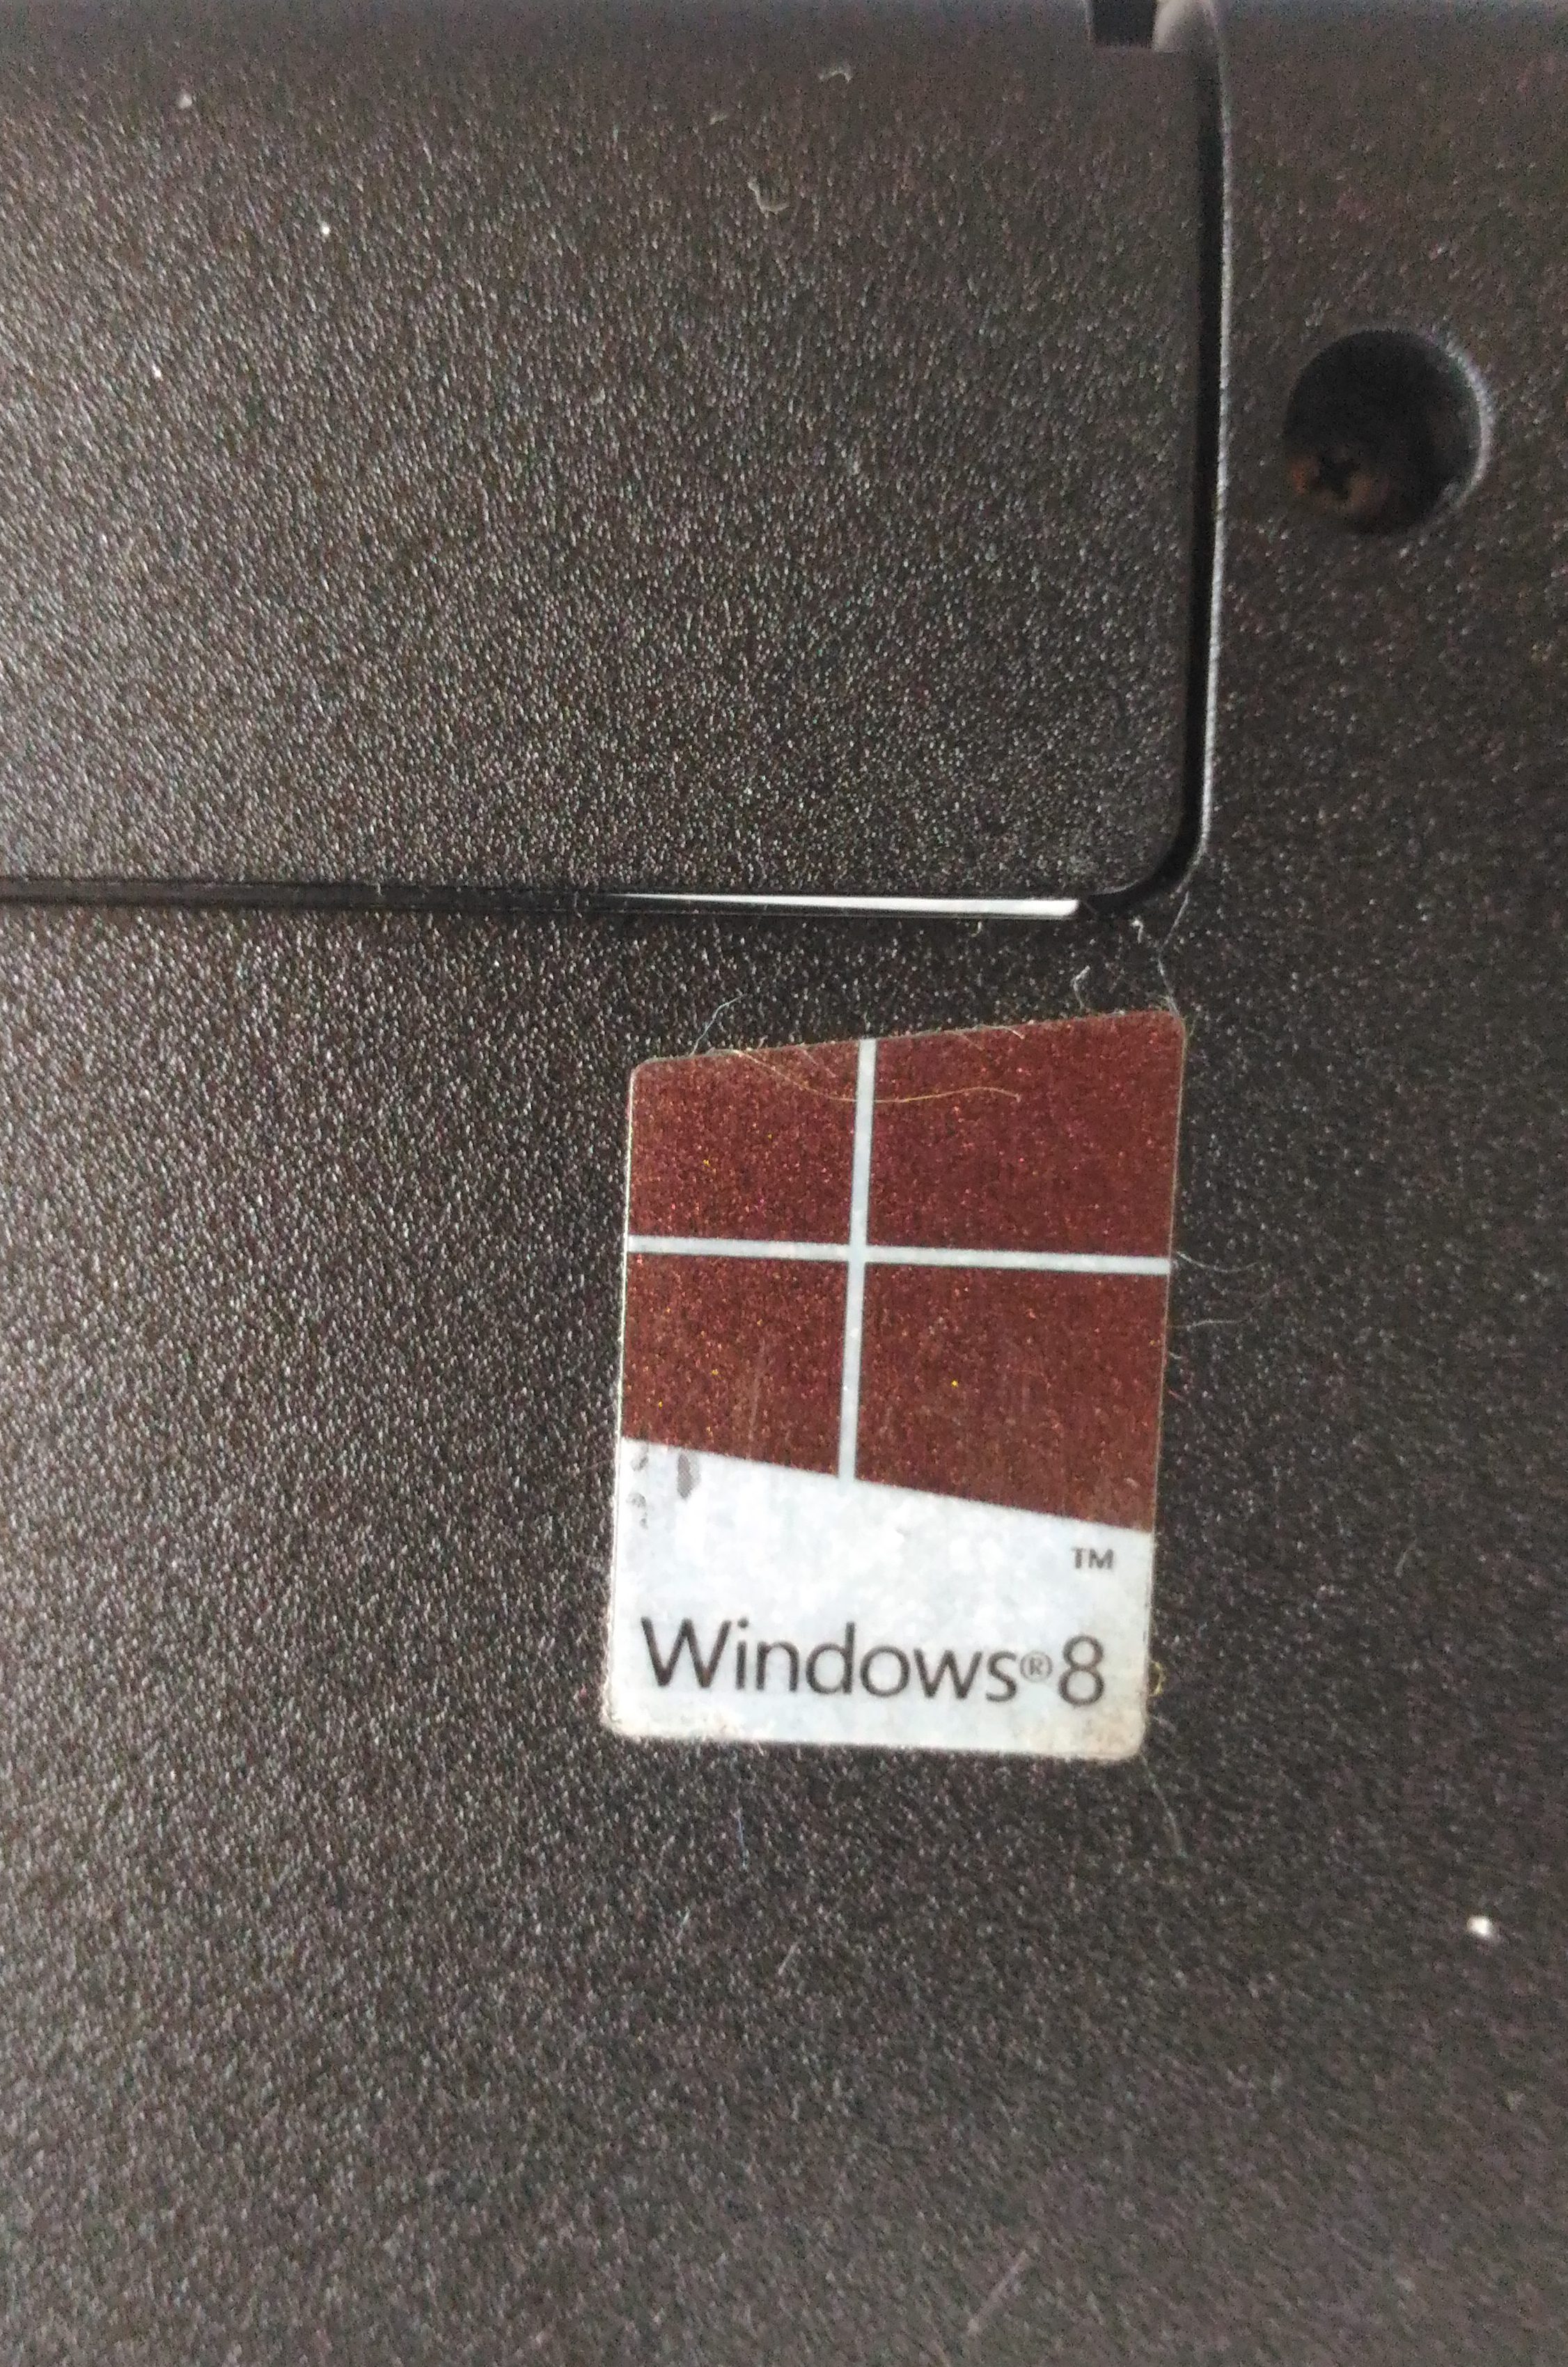 Windows 8、8.1、Windows 10のプロダクトキーの場所 | ベア・コンピューティング